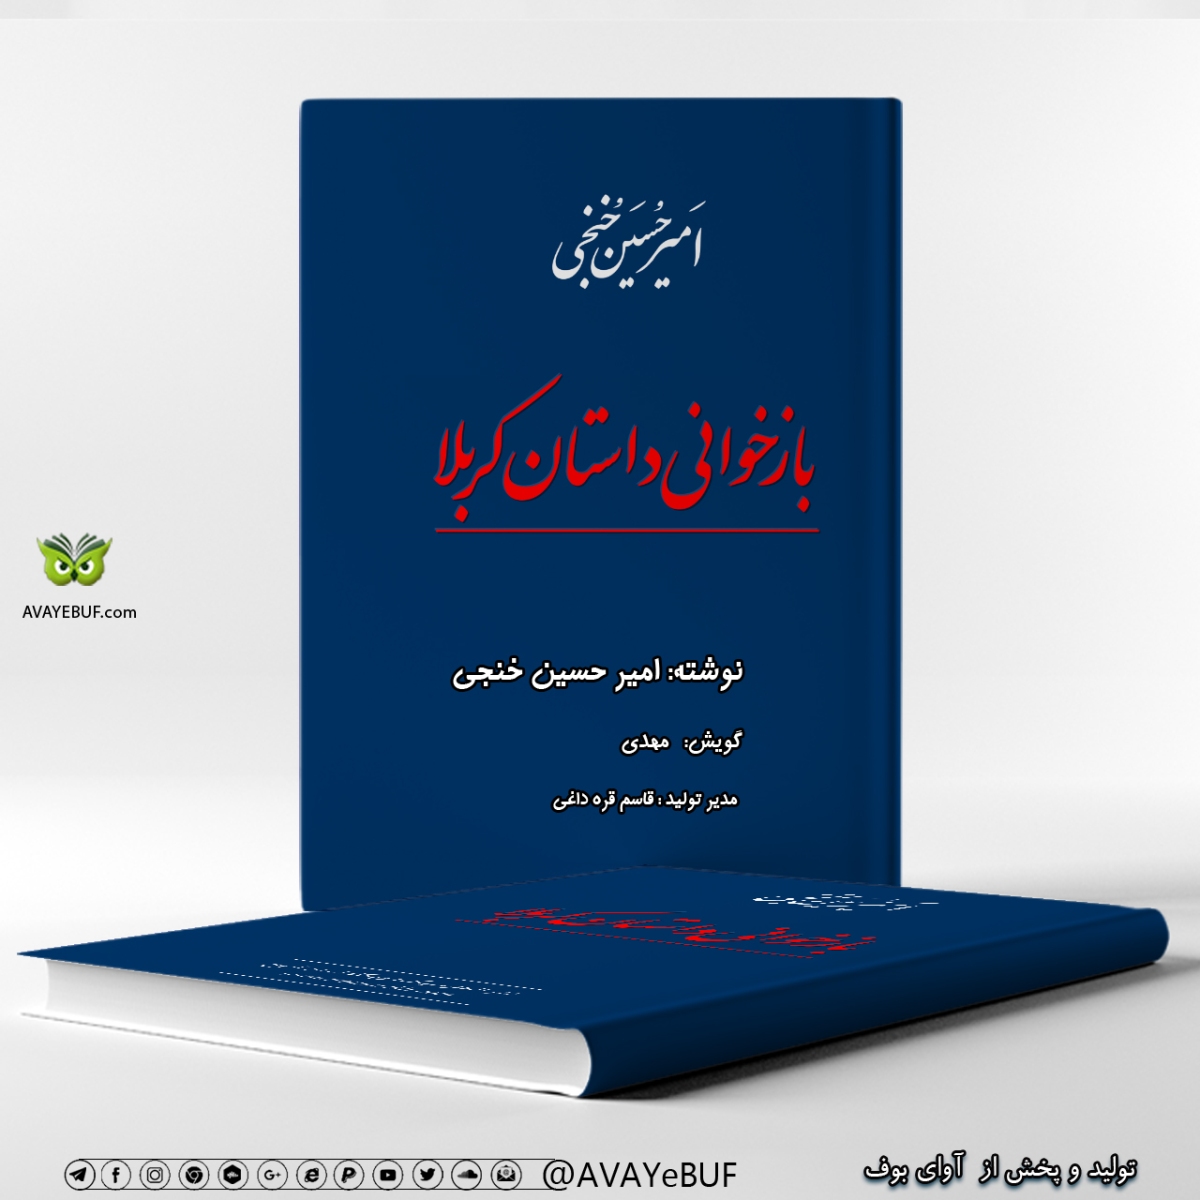 بازخوانی داستان کربلا |نوشته: امیر حسین خنجی | گویش: مهدی | تولید صوتی آوای بوف